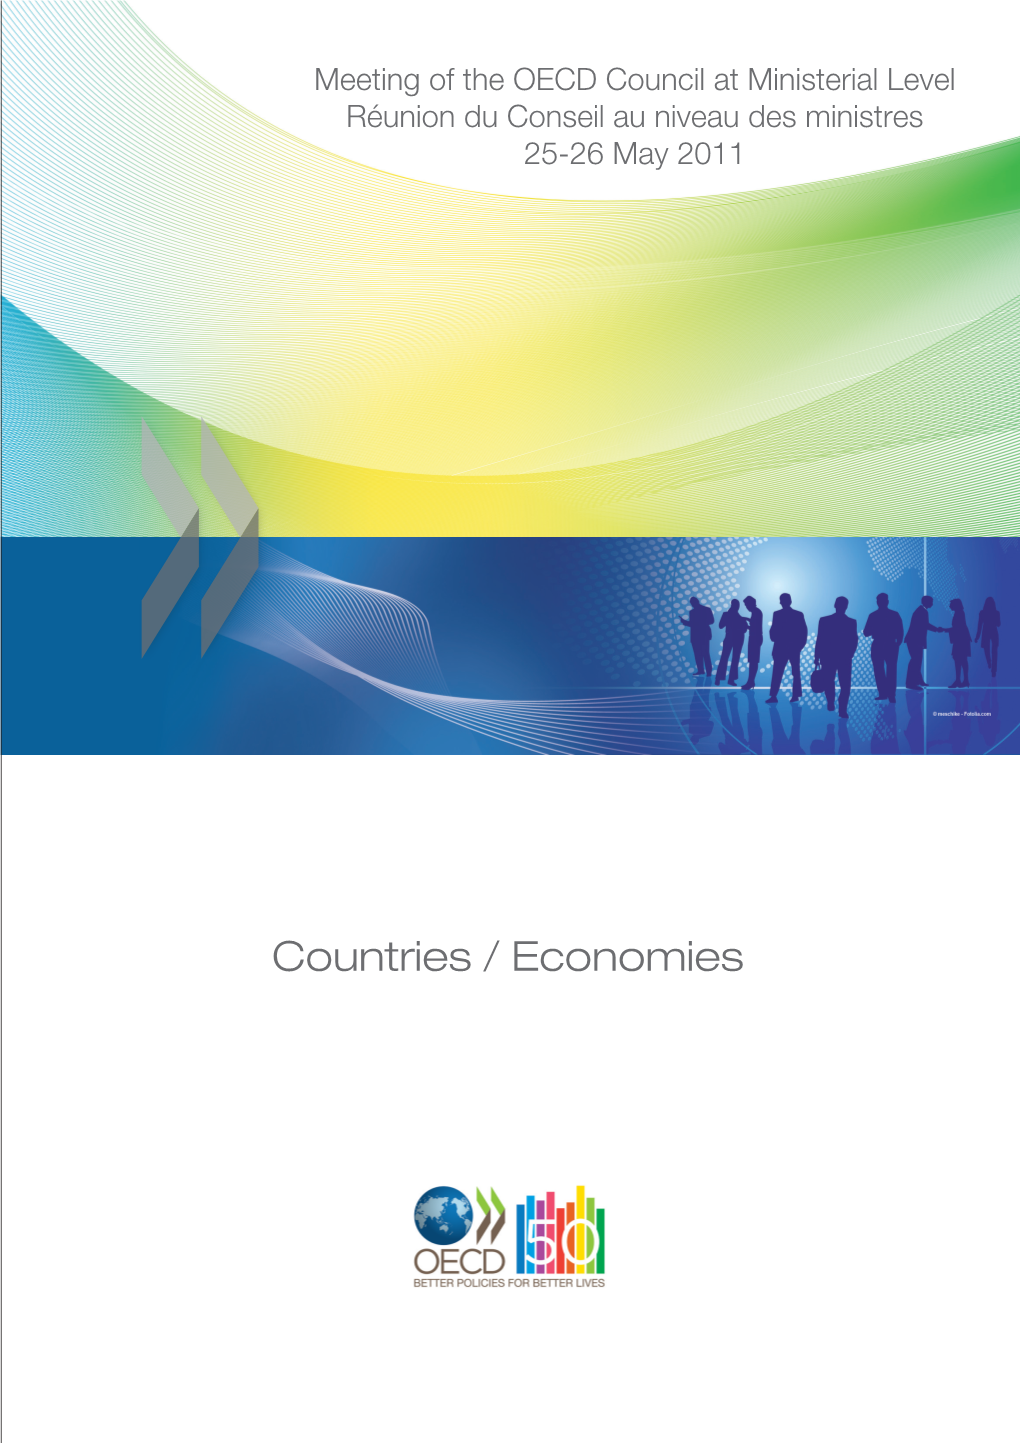 Countries / Economies OECD Paris 2, Rue André-Pascal, 75775 Paris Cedex 16 Tel.: 33 (0) 1 45 24 82 00